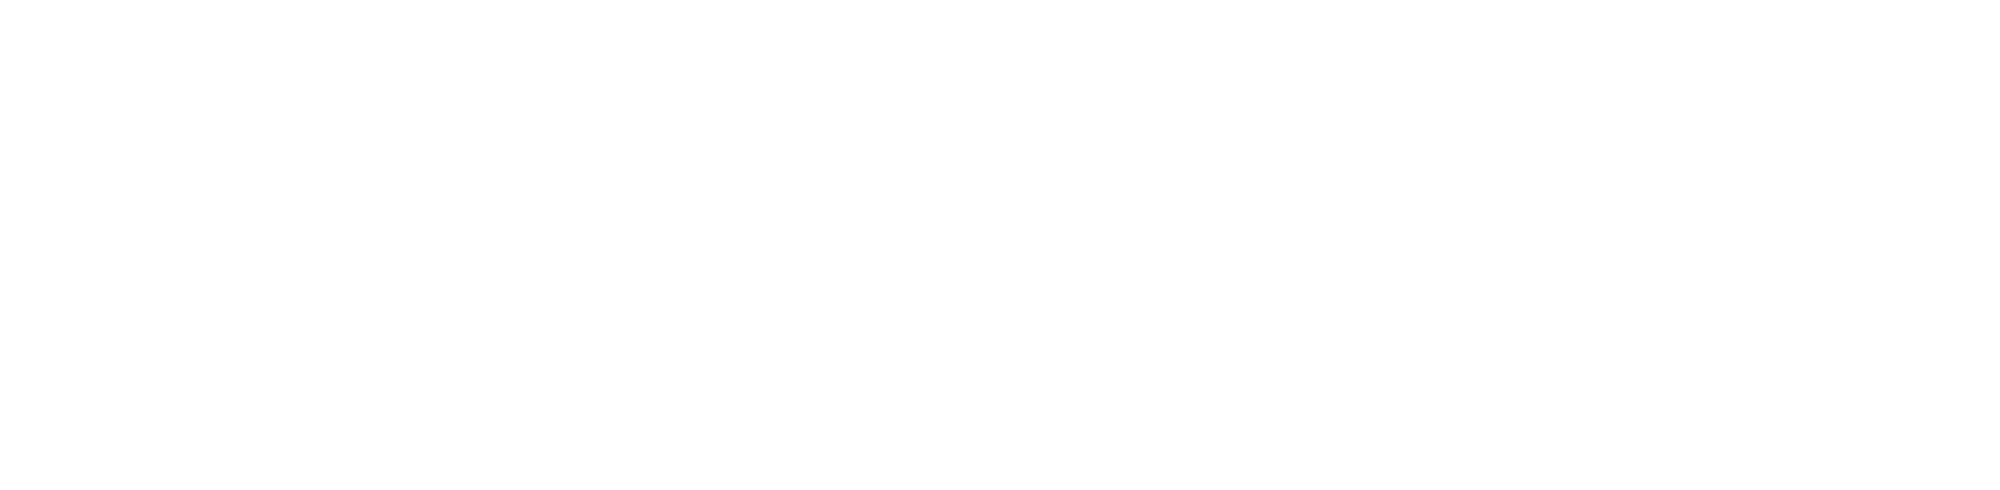 Deutsche Post AG logo